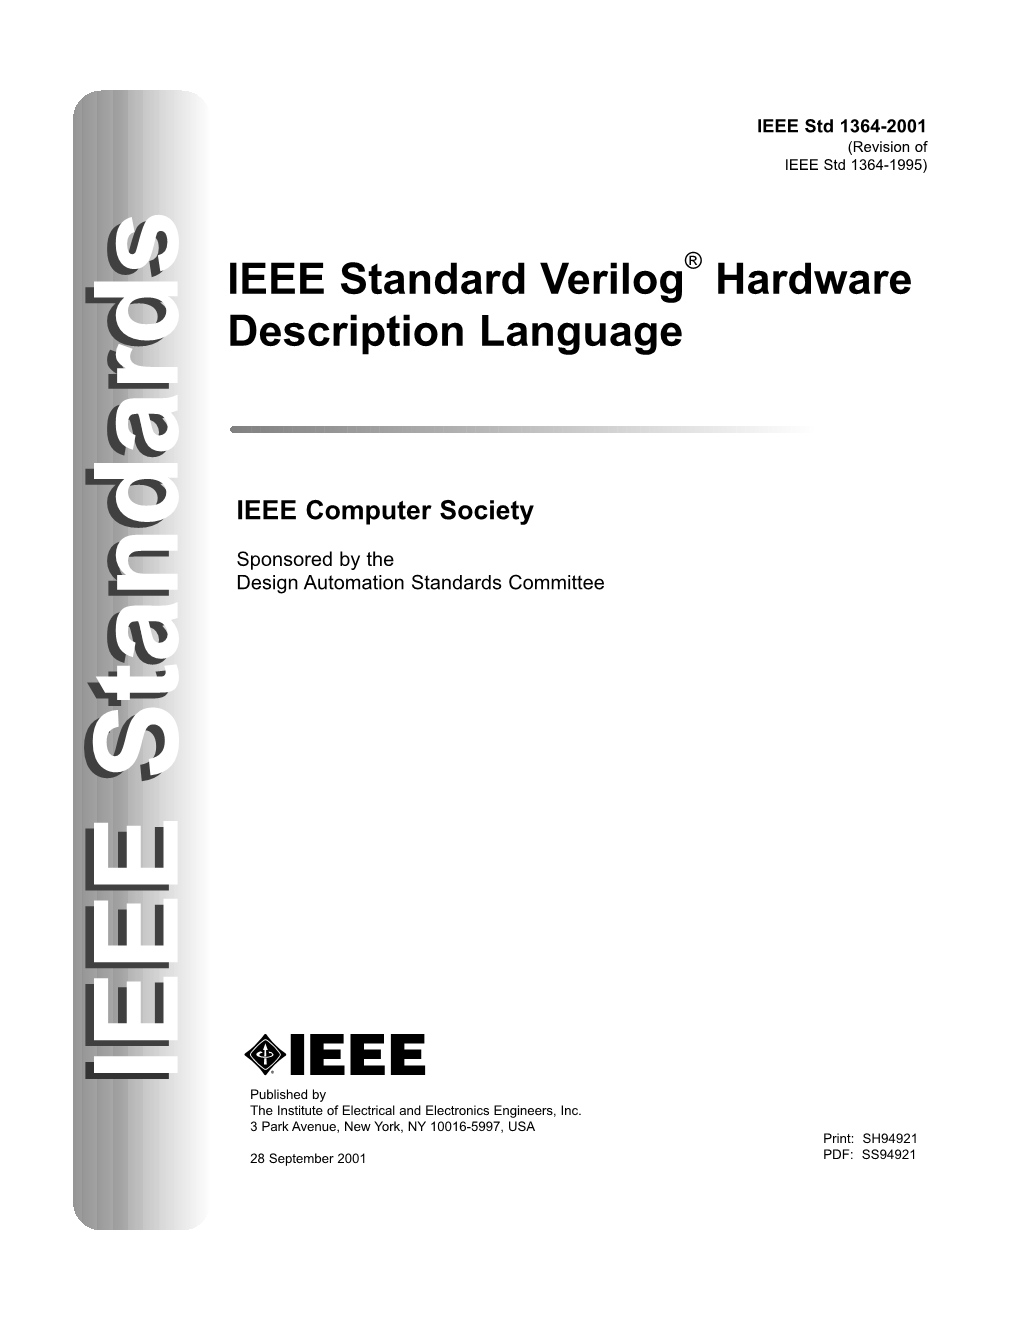 IEEE Std 1364-2001 (Revision of IEEE Std 1364-1995)